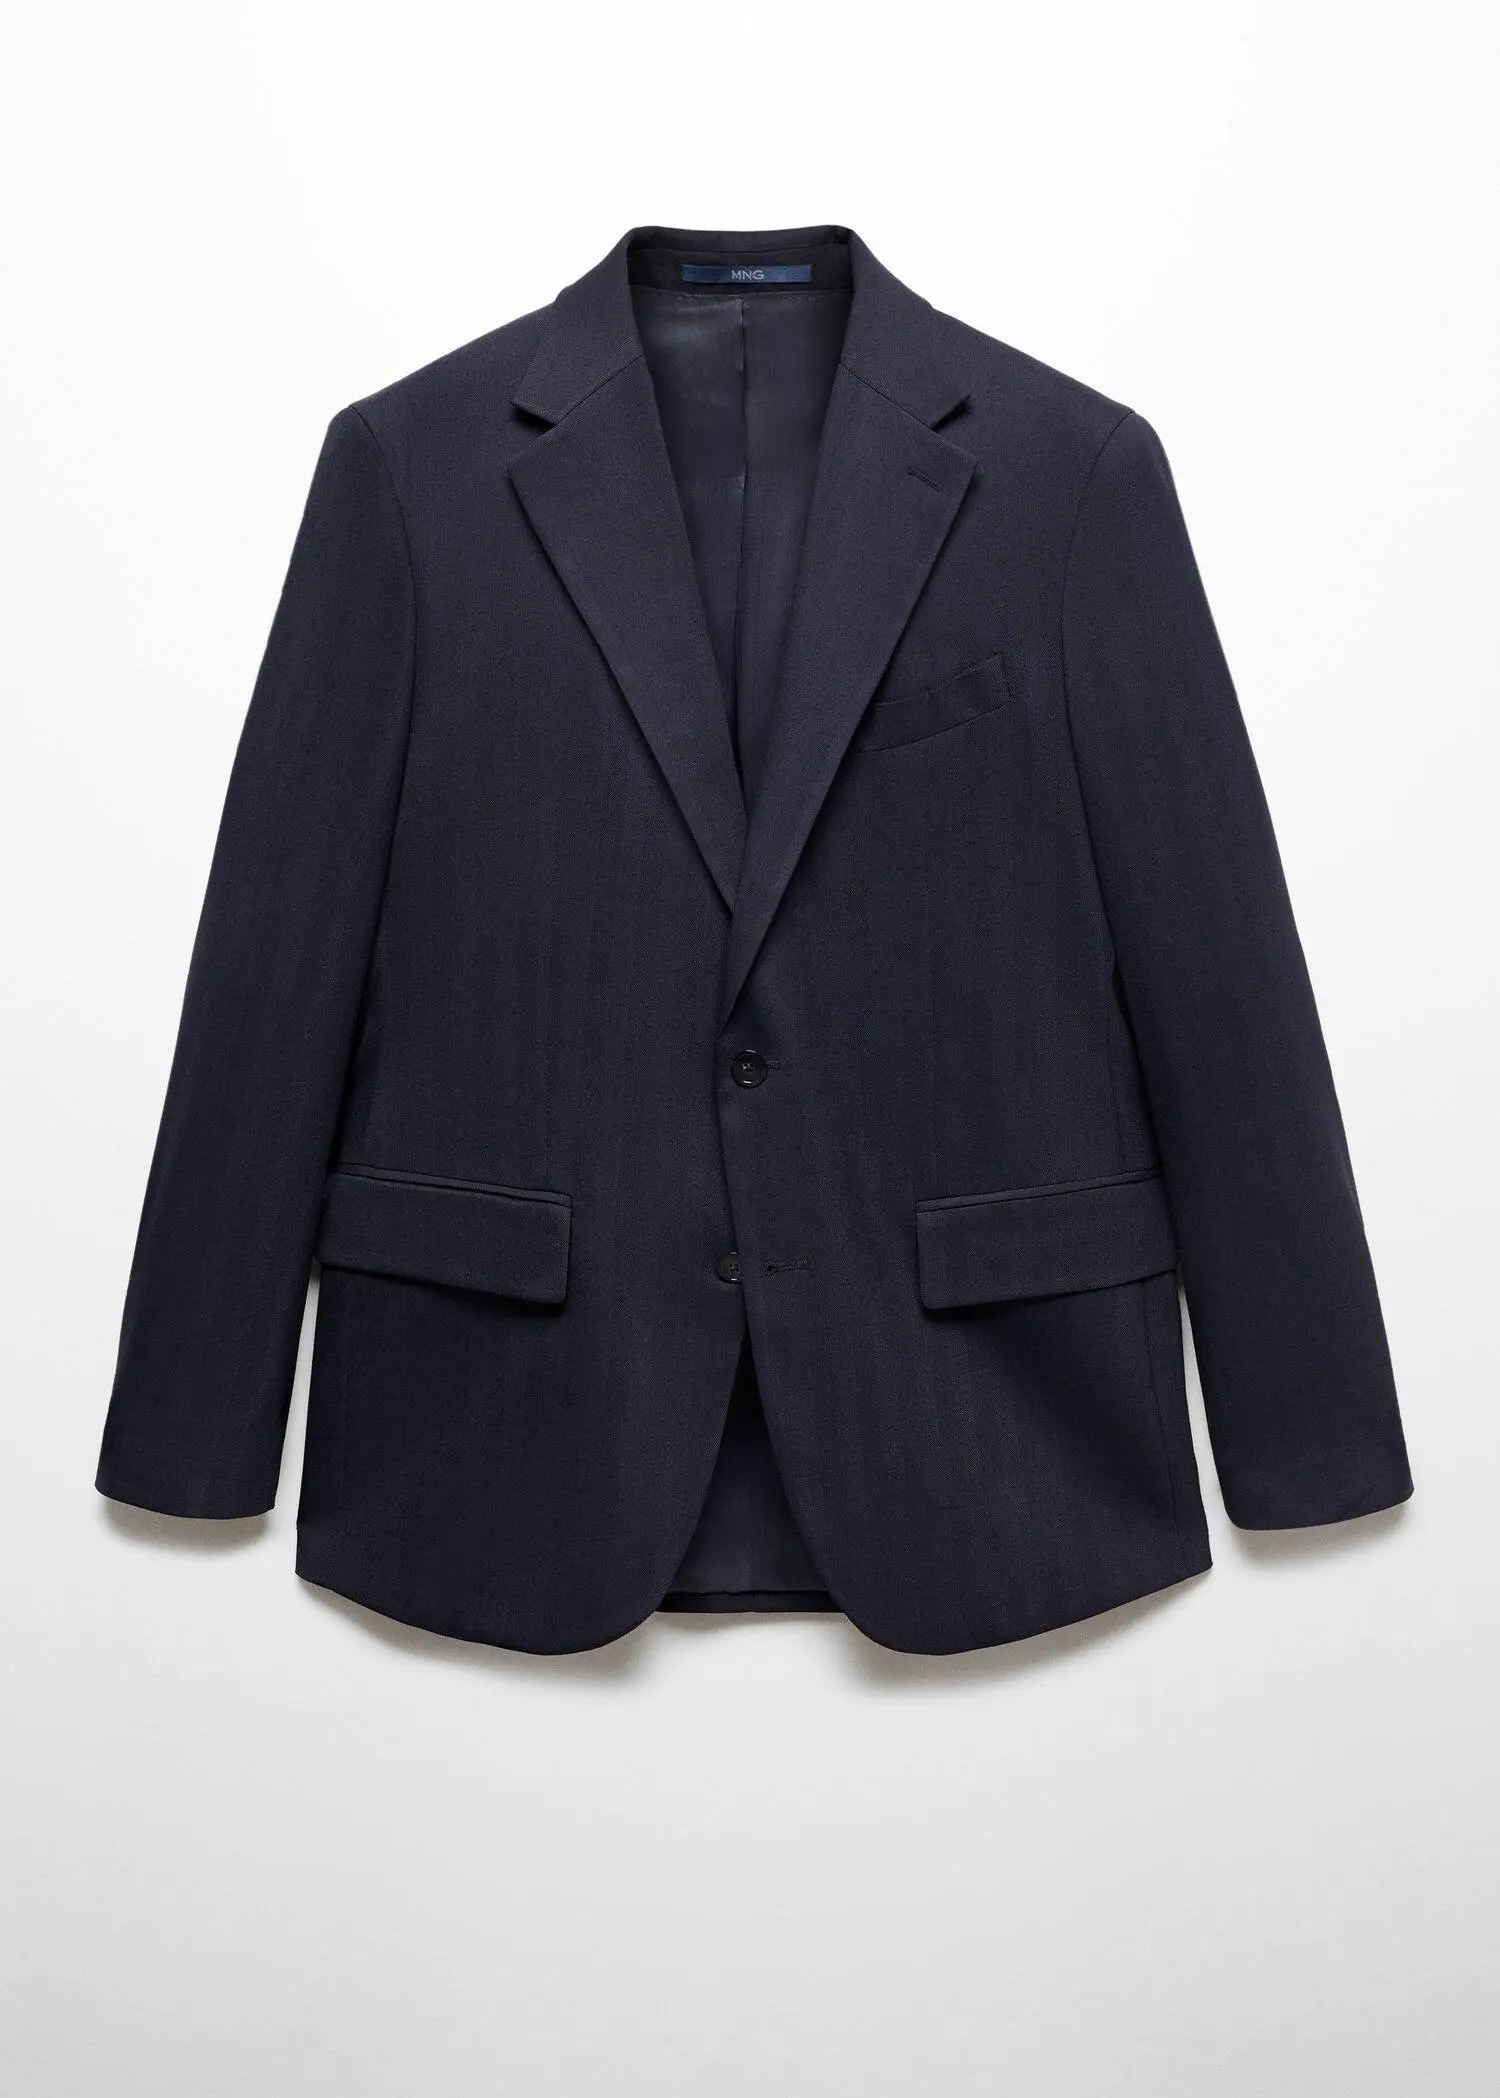 Mango Slim fit cold wool herringbone suit jacket. 1